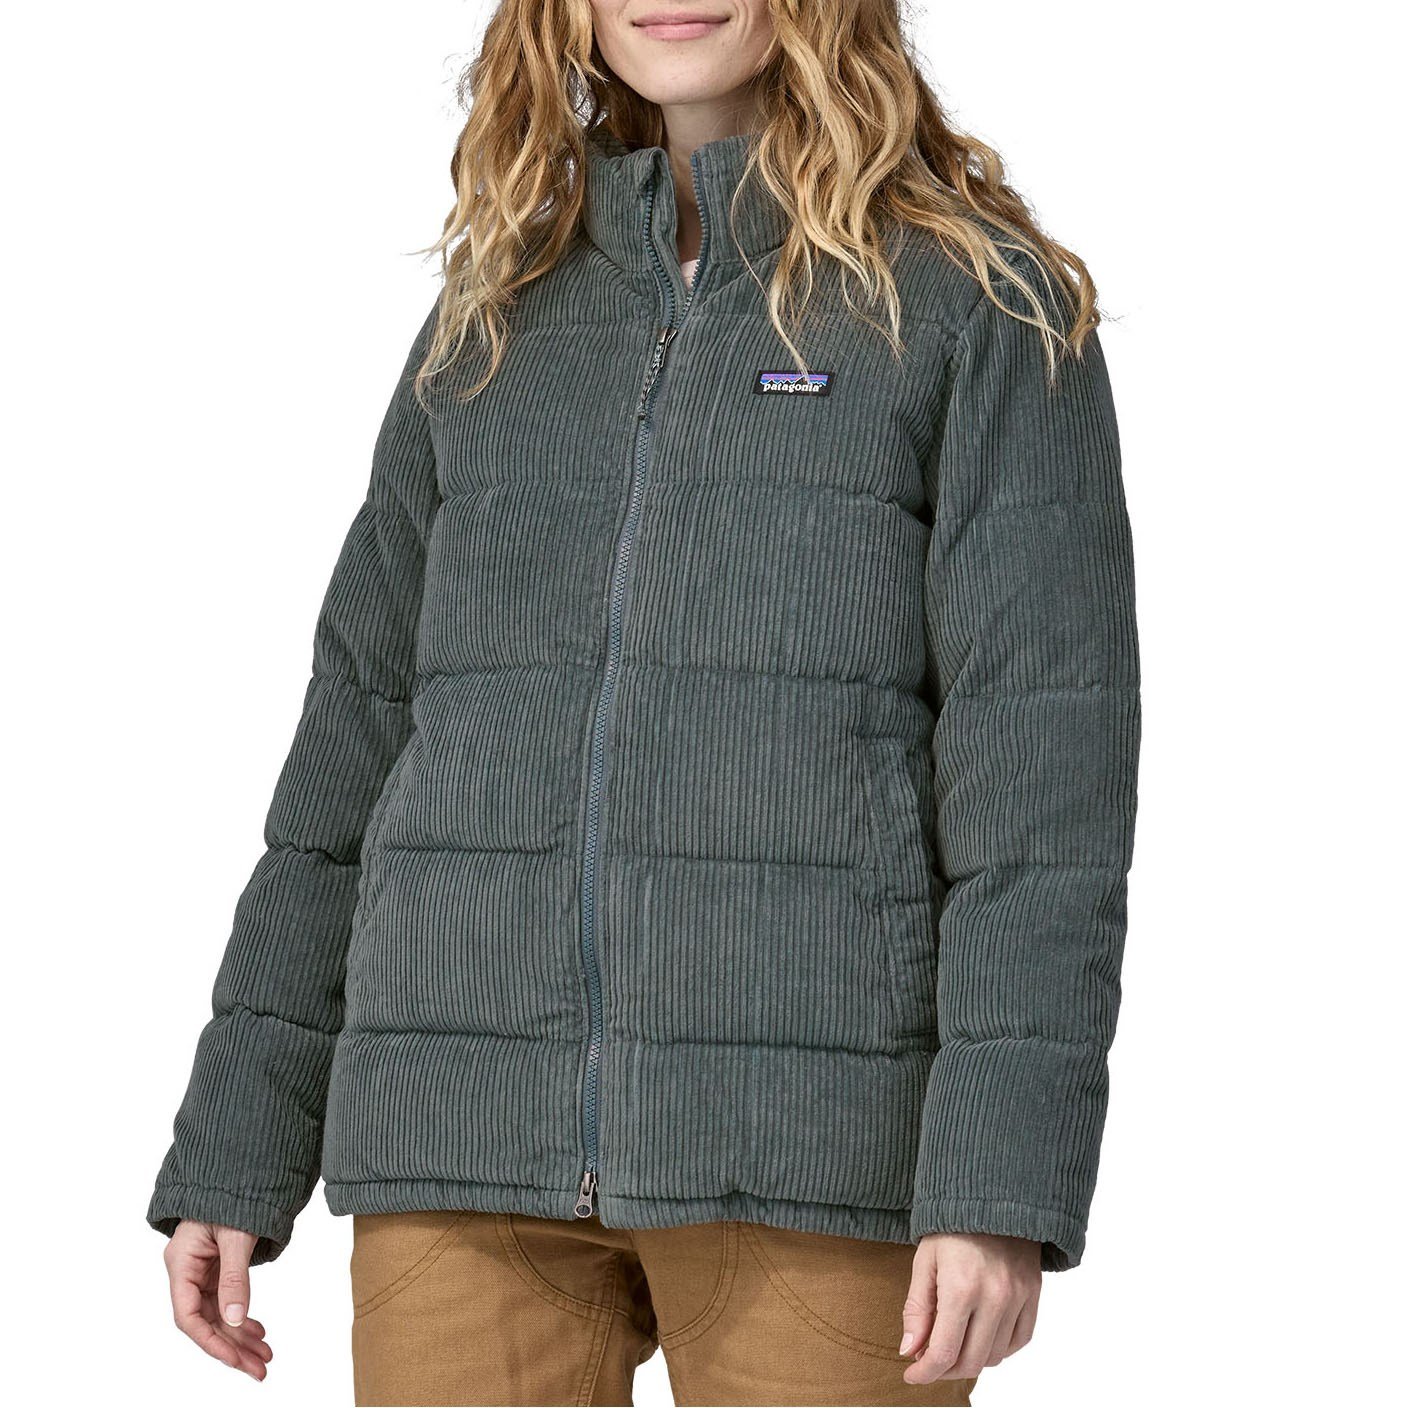 https://images.evo.com/imgp/zoom/223858/1043677/patagonia-cord-fjord-coat-women-s-.jpg